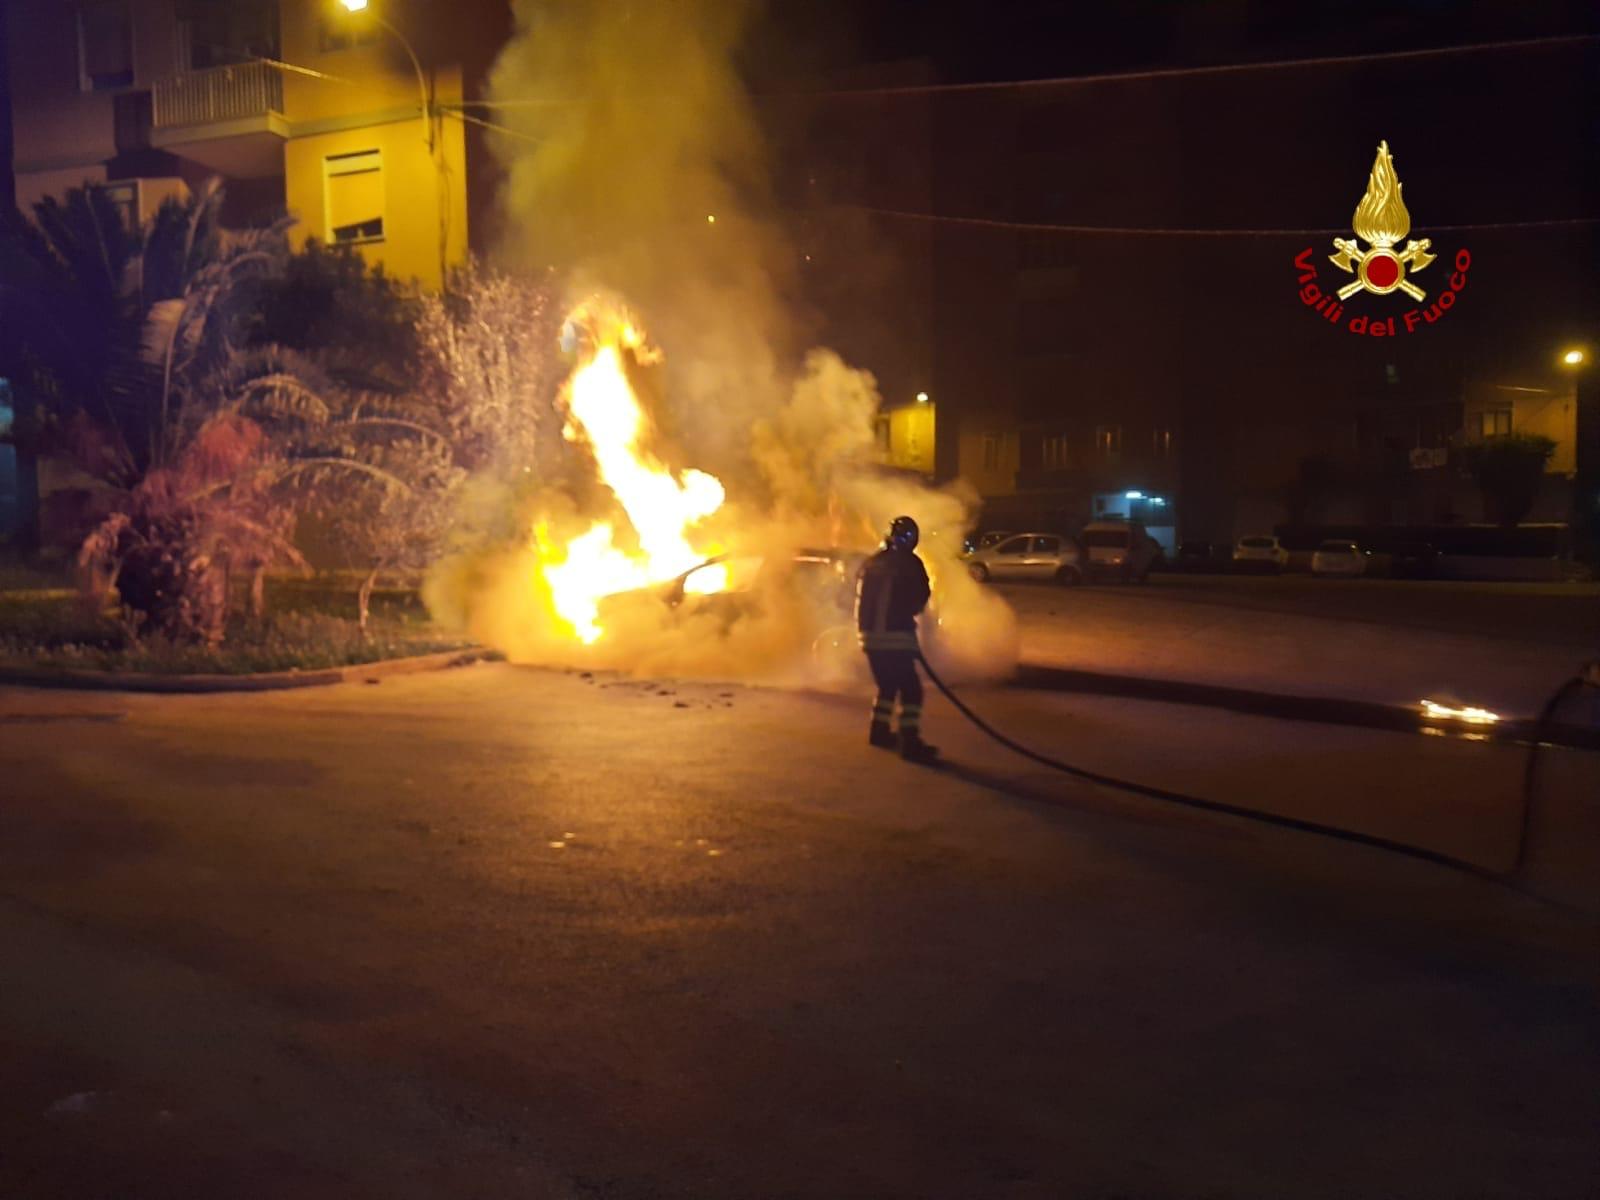 Notte di fuoco, incendio in via Luigi Cassia: auto in fiamme, le FOTO dell’intervento dei pompieri